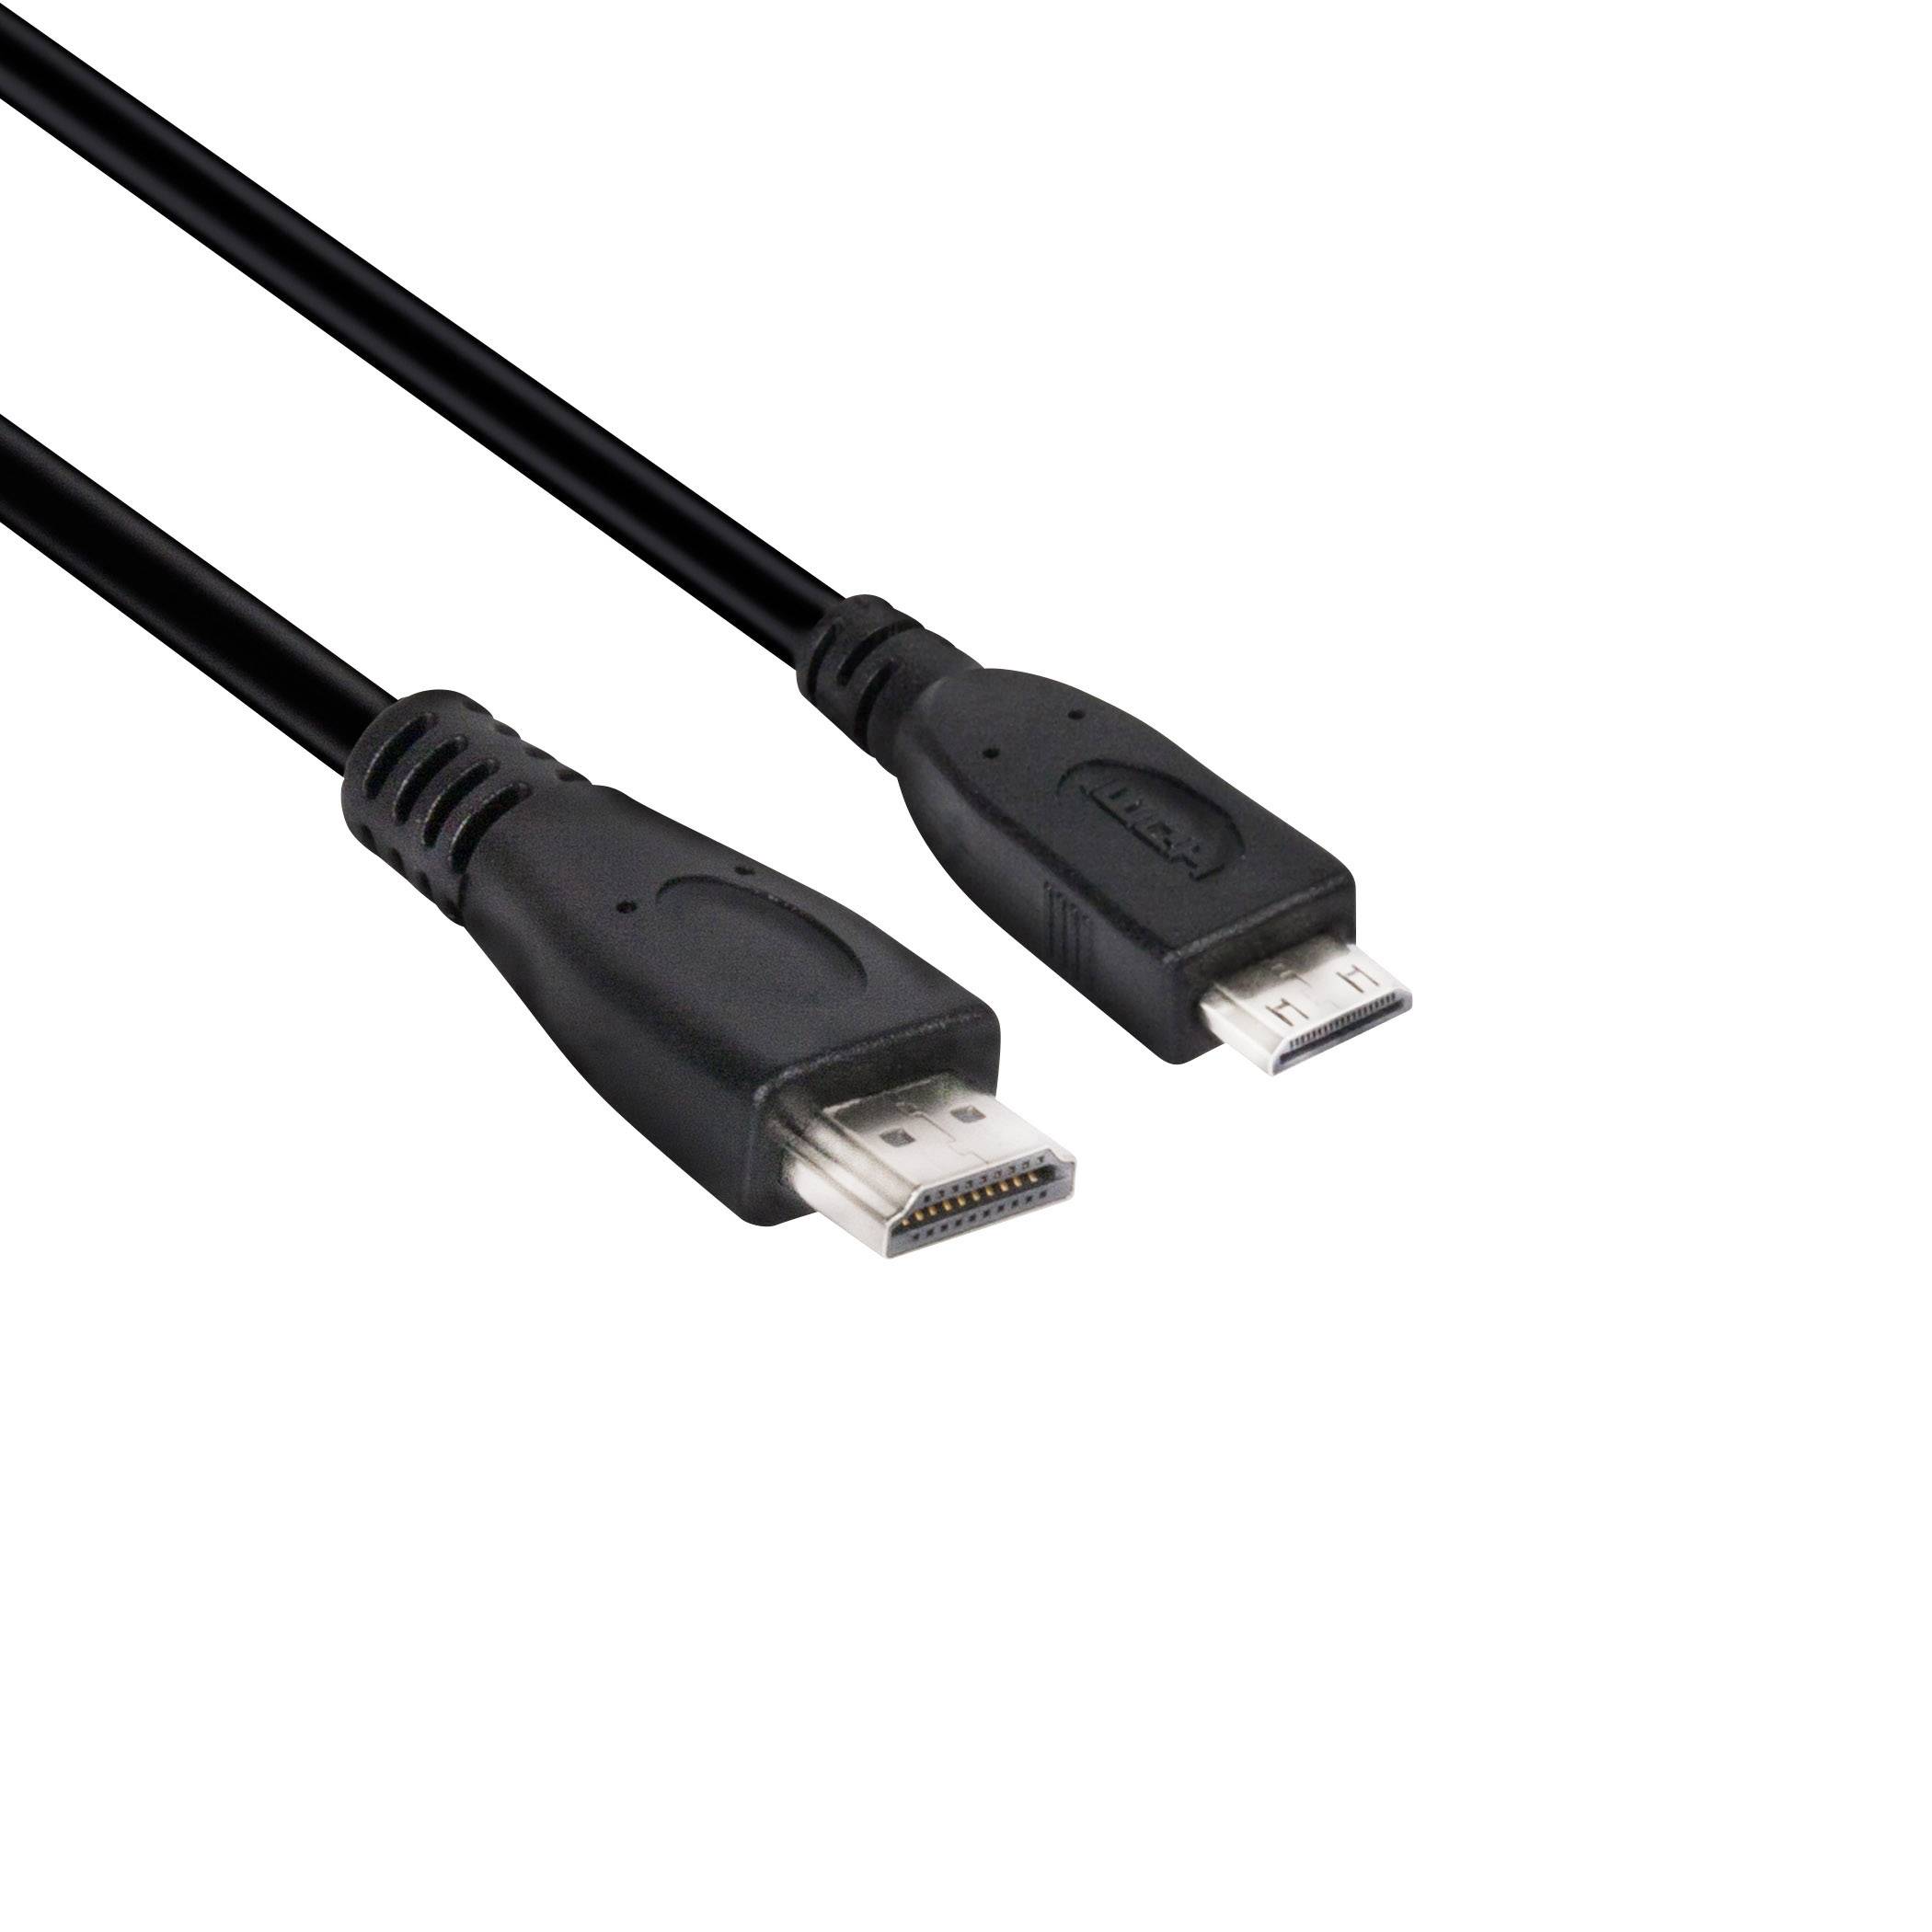 CLUB3D Kabel   Mini-HDMI > HDMI 2.0 1m 4K@60Hz      St/St retail